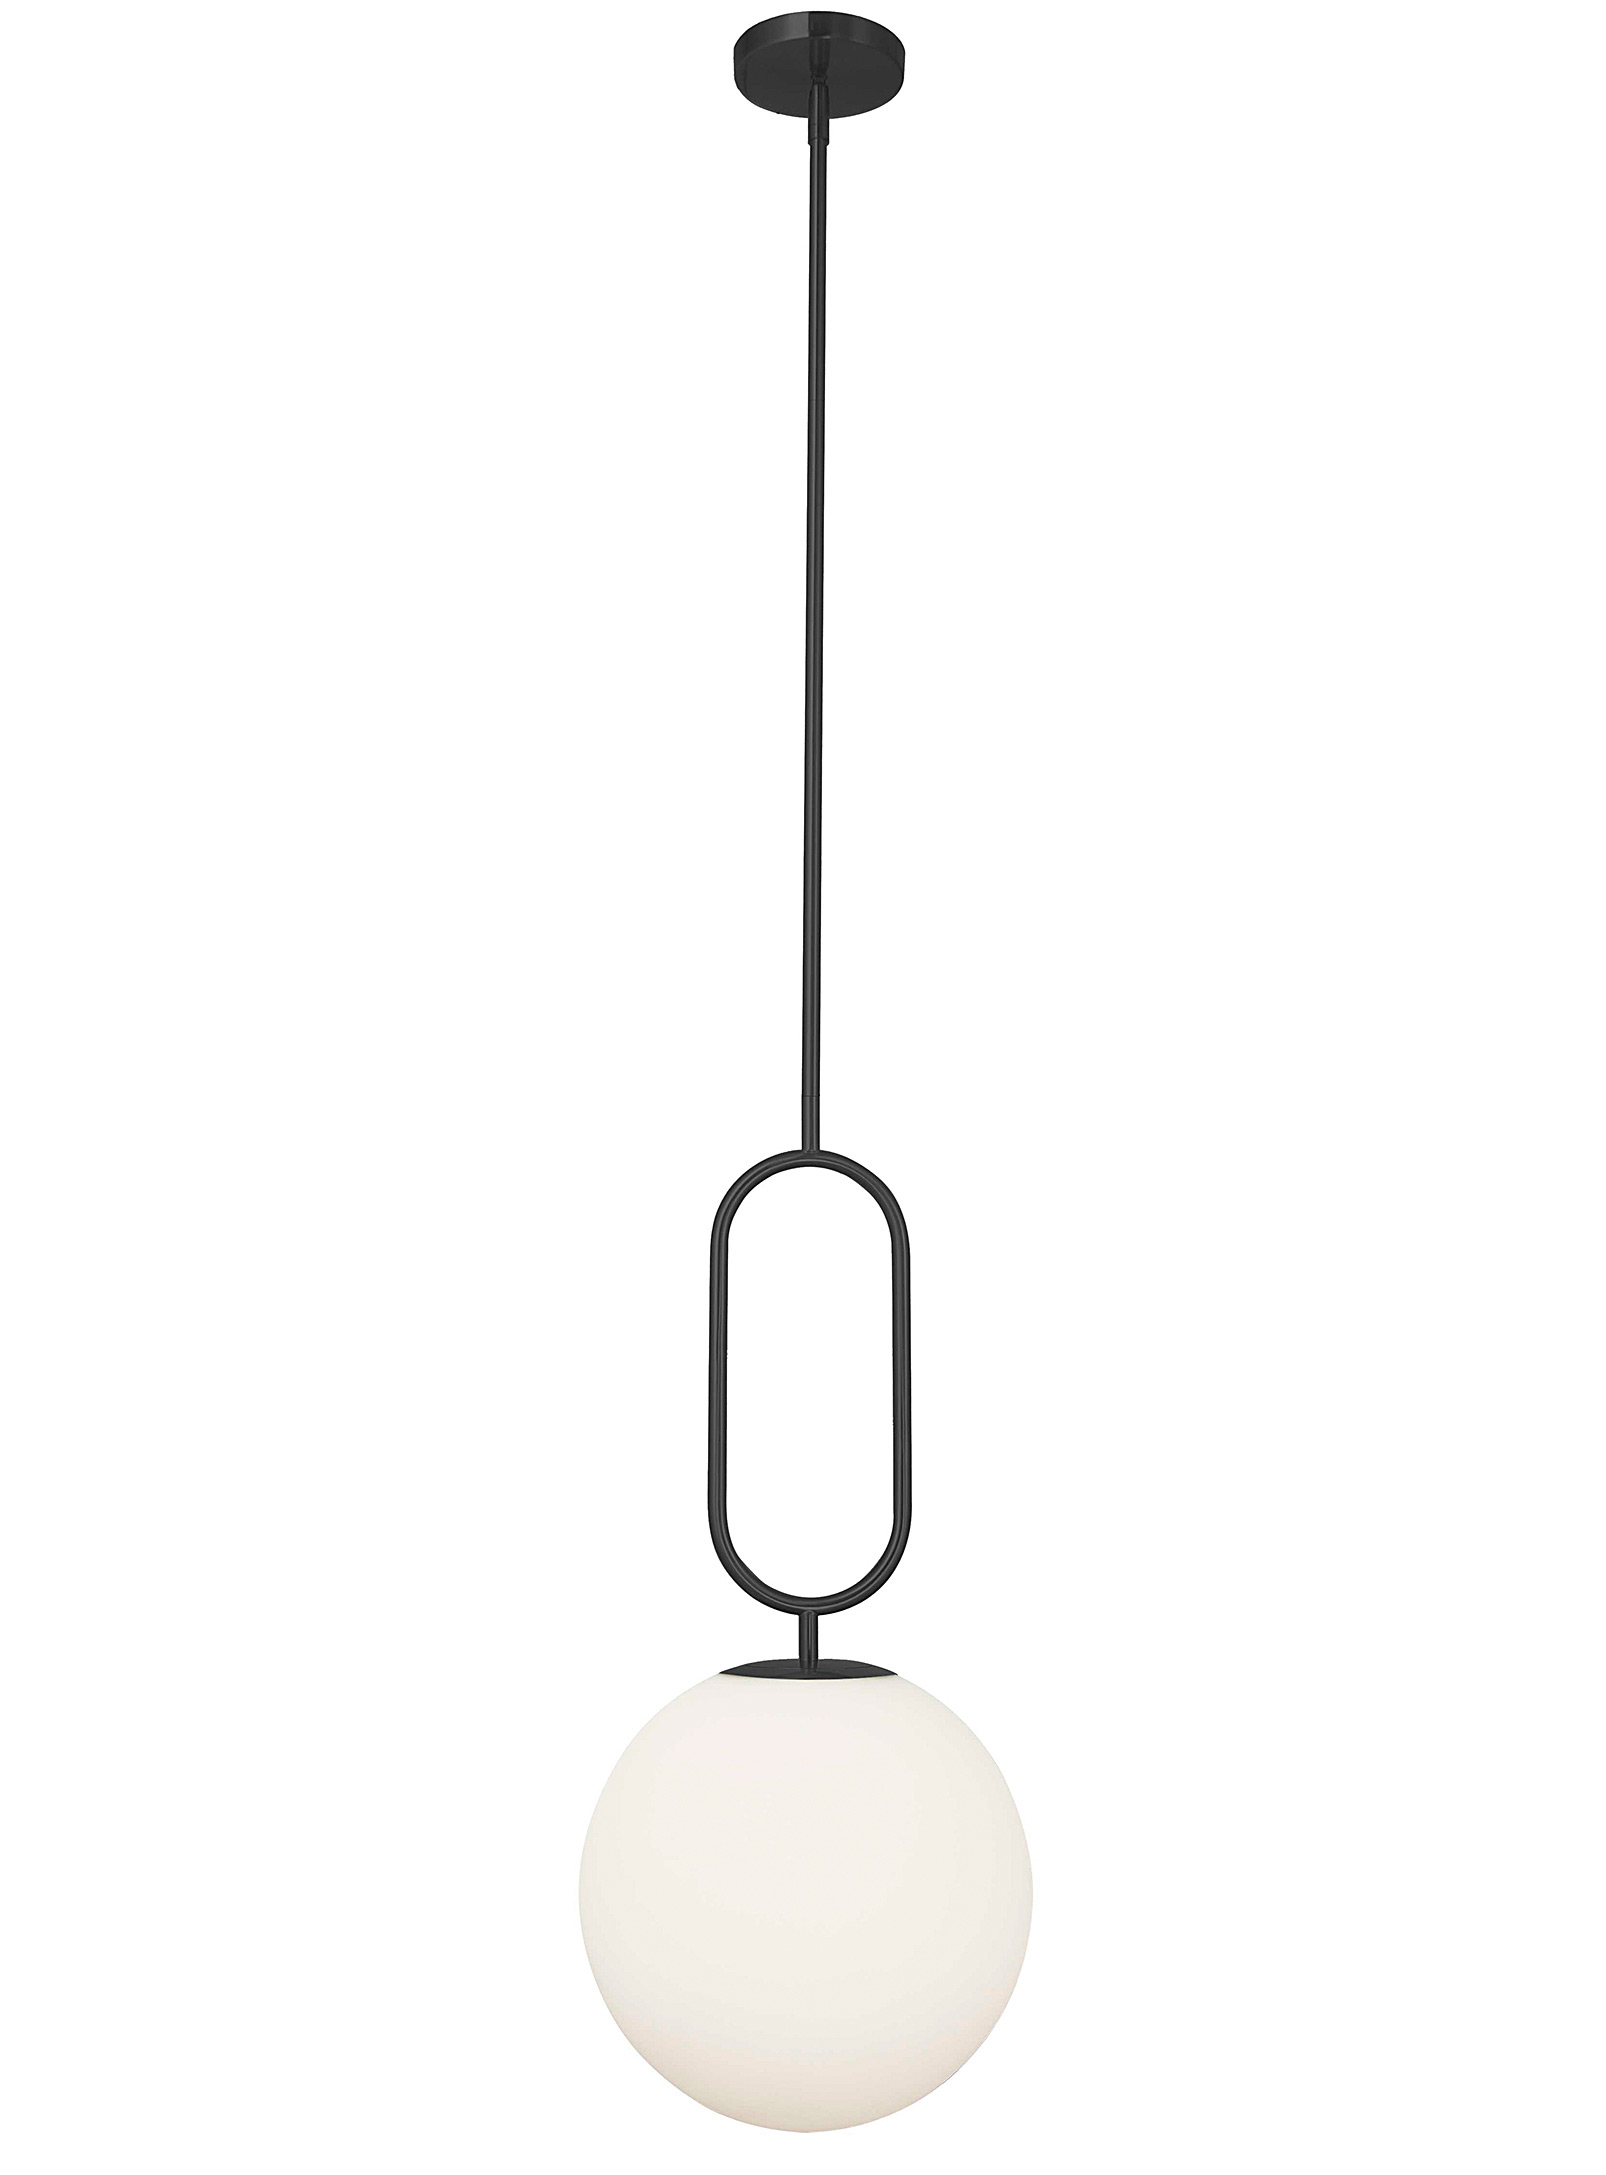 Simons Maison Black Spherical Symmetry Hanging Lamp